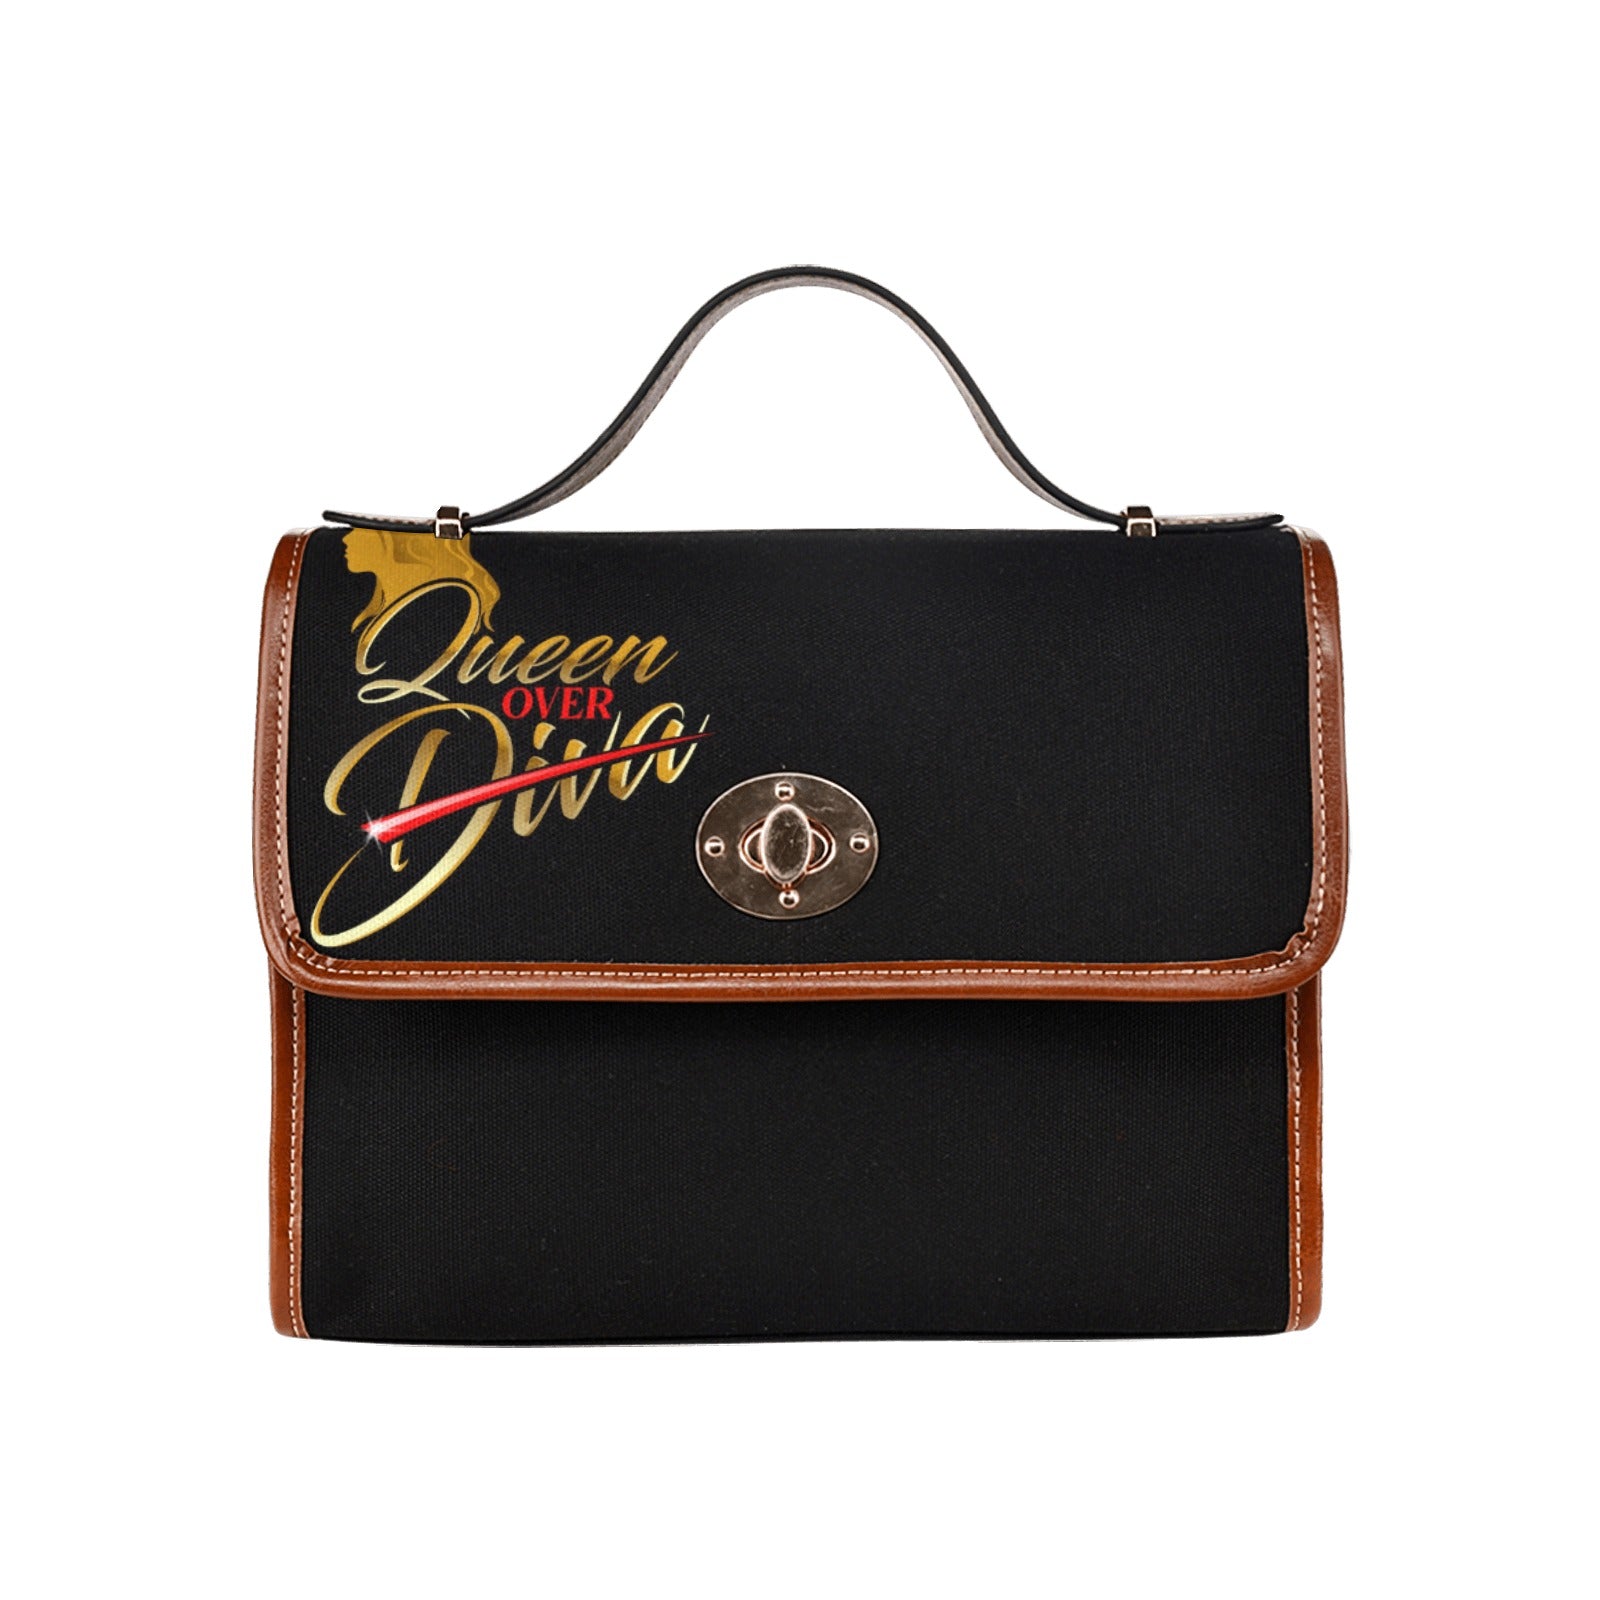 Queen Over Diva Waterproof Canvas Bag-Brown